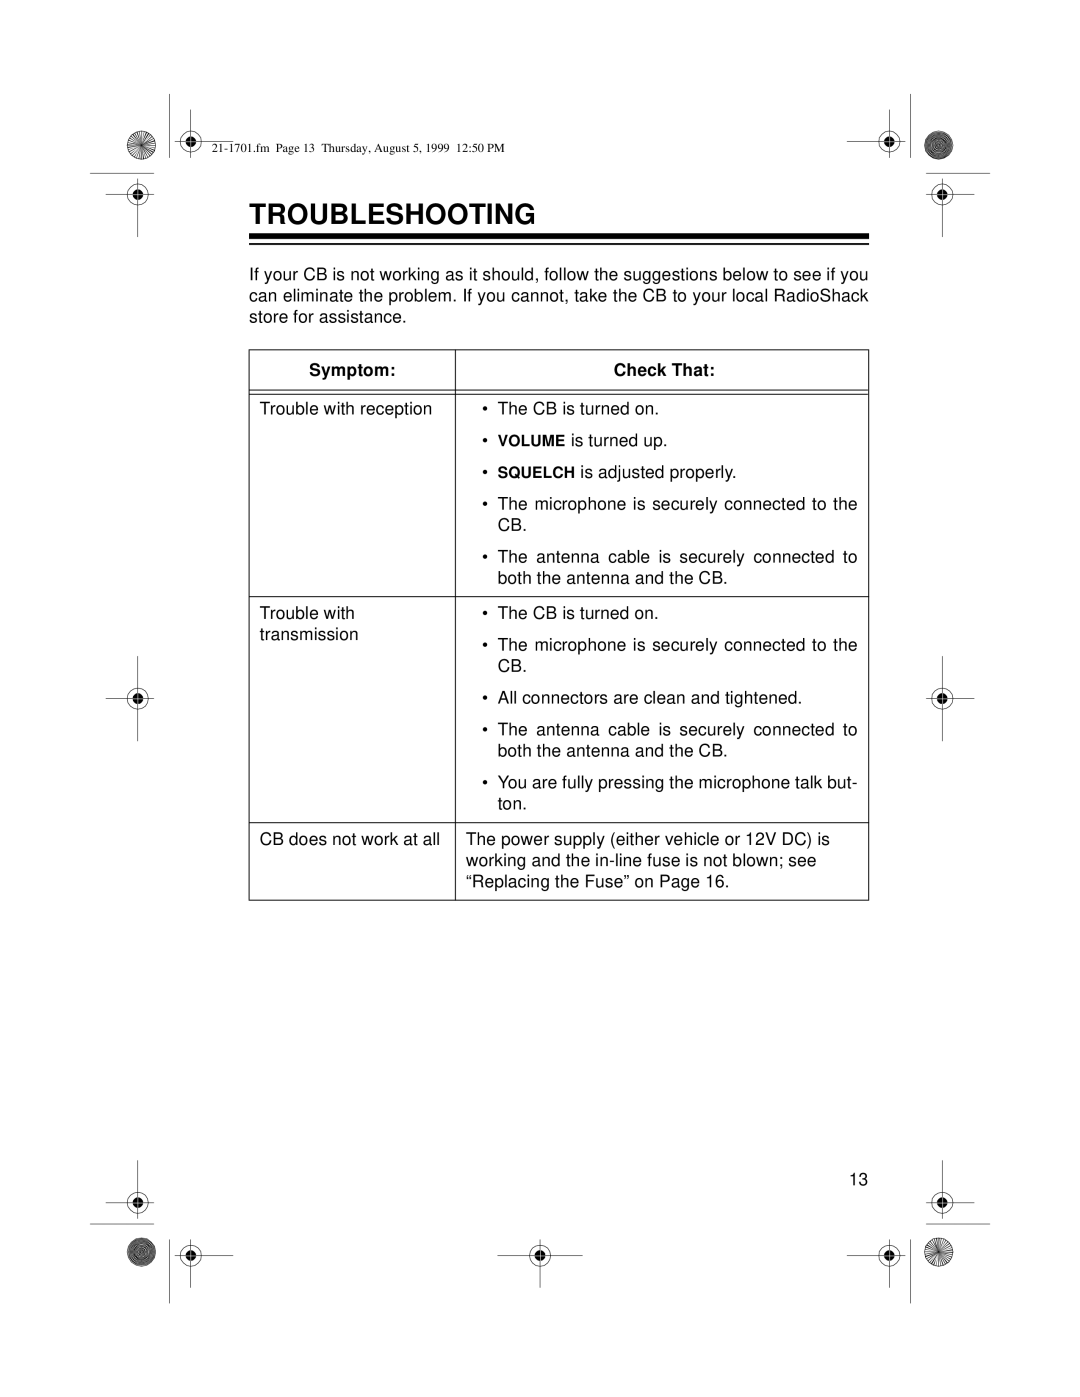 Radio Shack TRC-501 owner manual Troubleshooting, Symptom Check That 